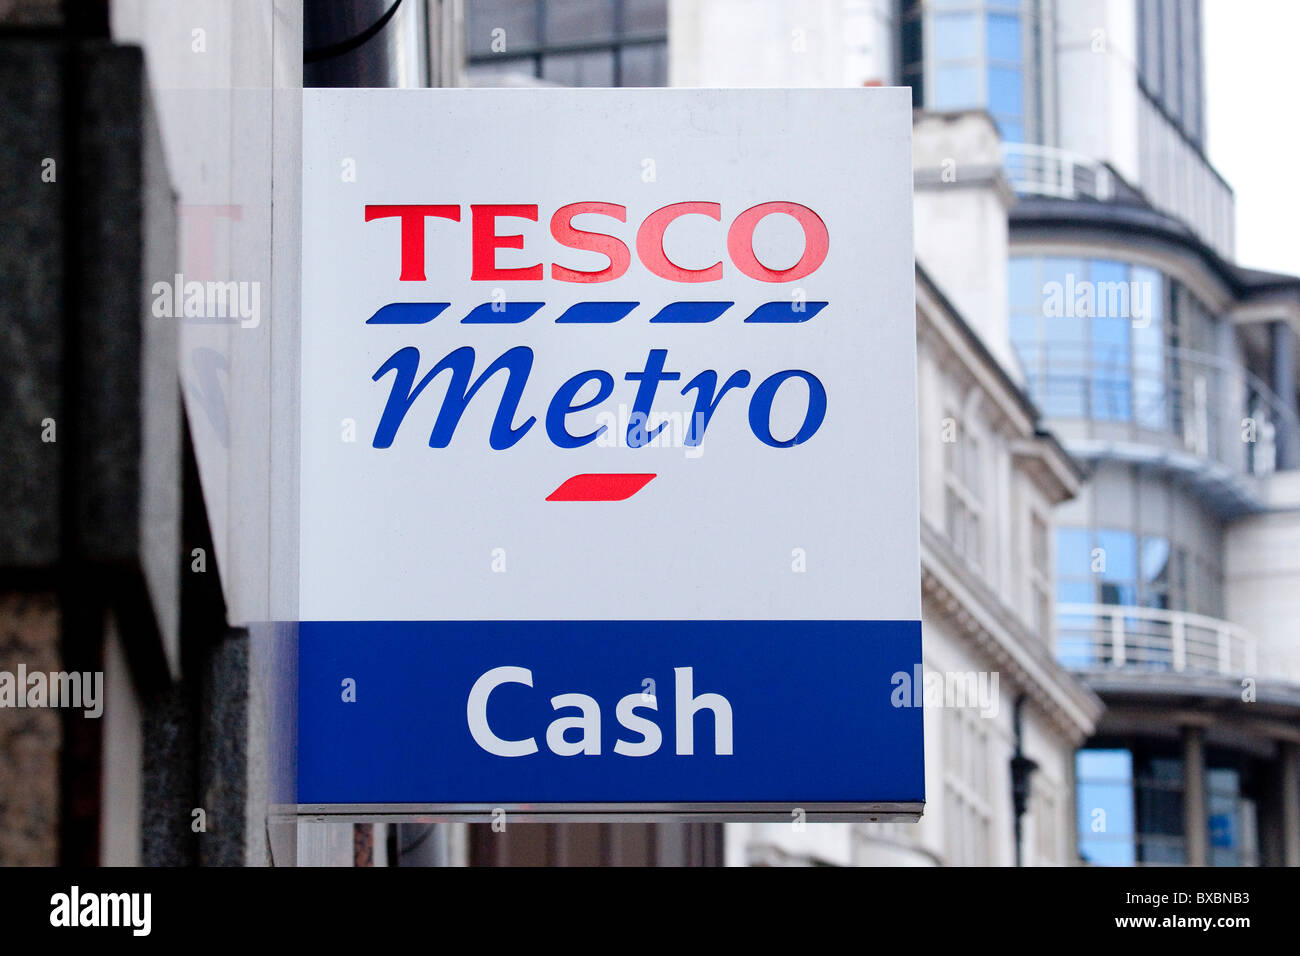 Logo sur un magasin de la chaîne de supermarchés Tesco, Tesco Express, Londres, Angleterre, Royaume-Uni, Europe Banque D'Images